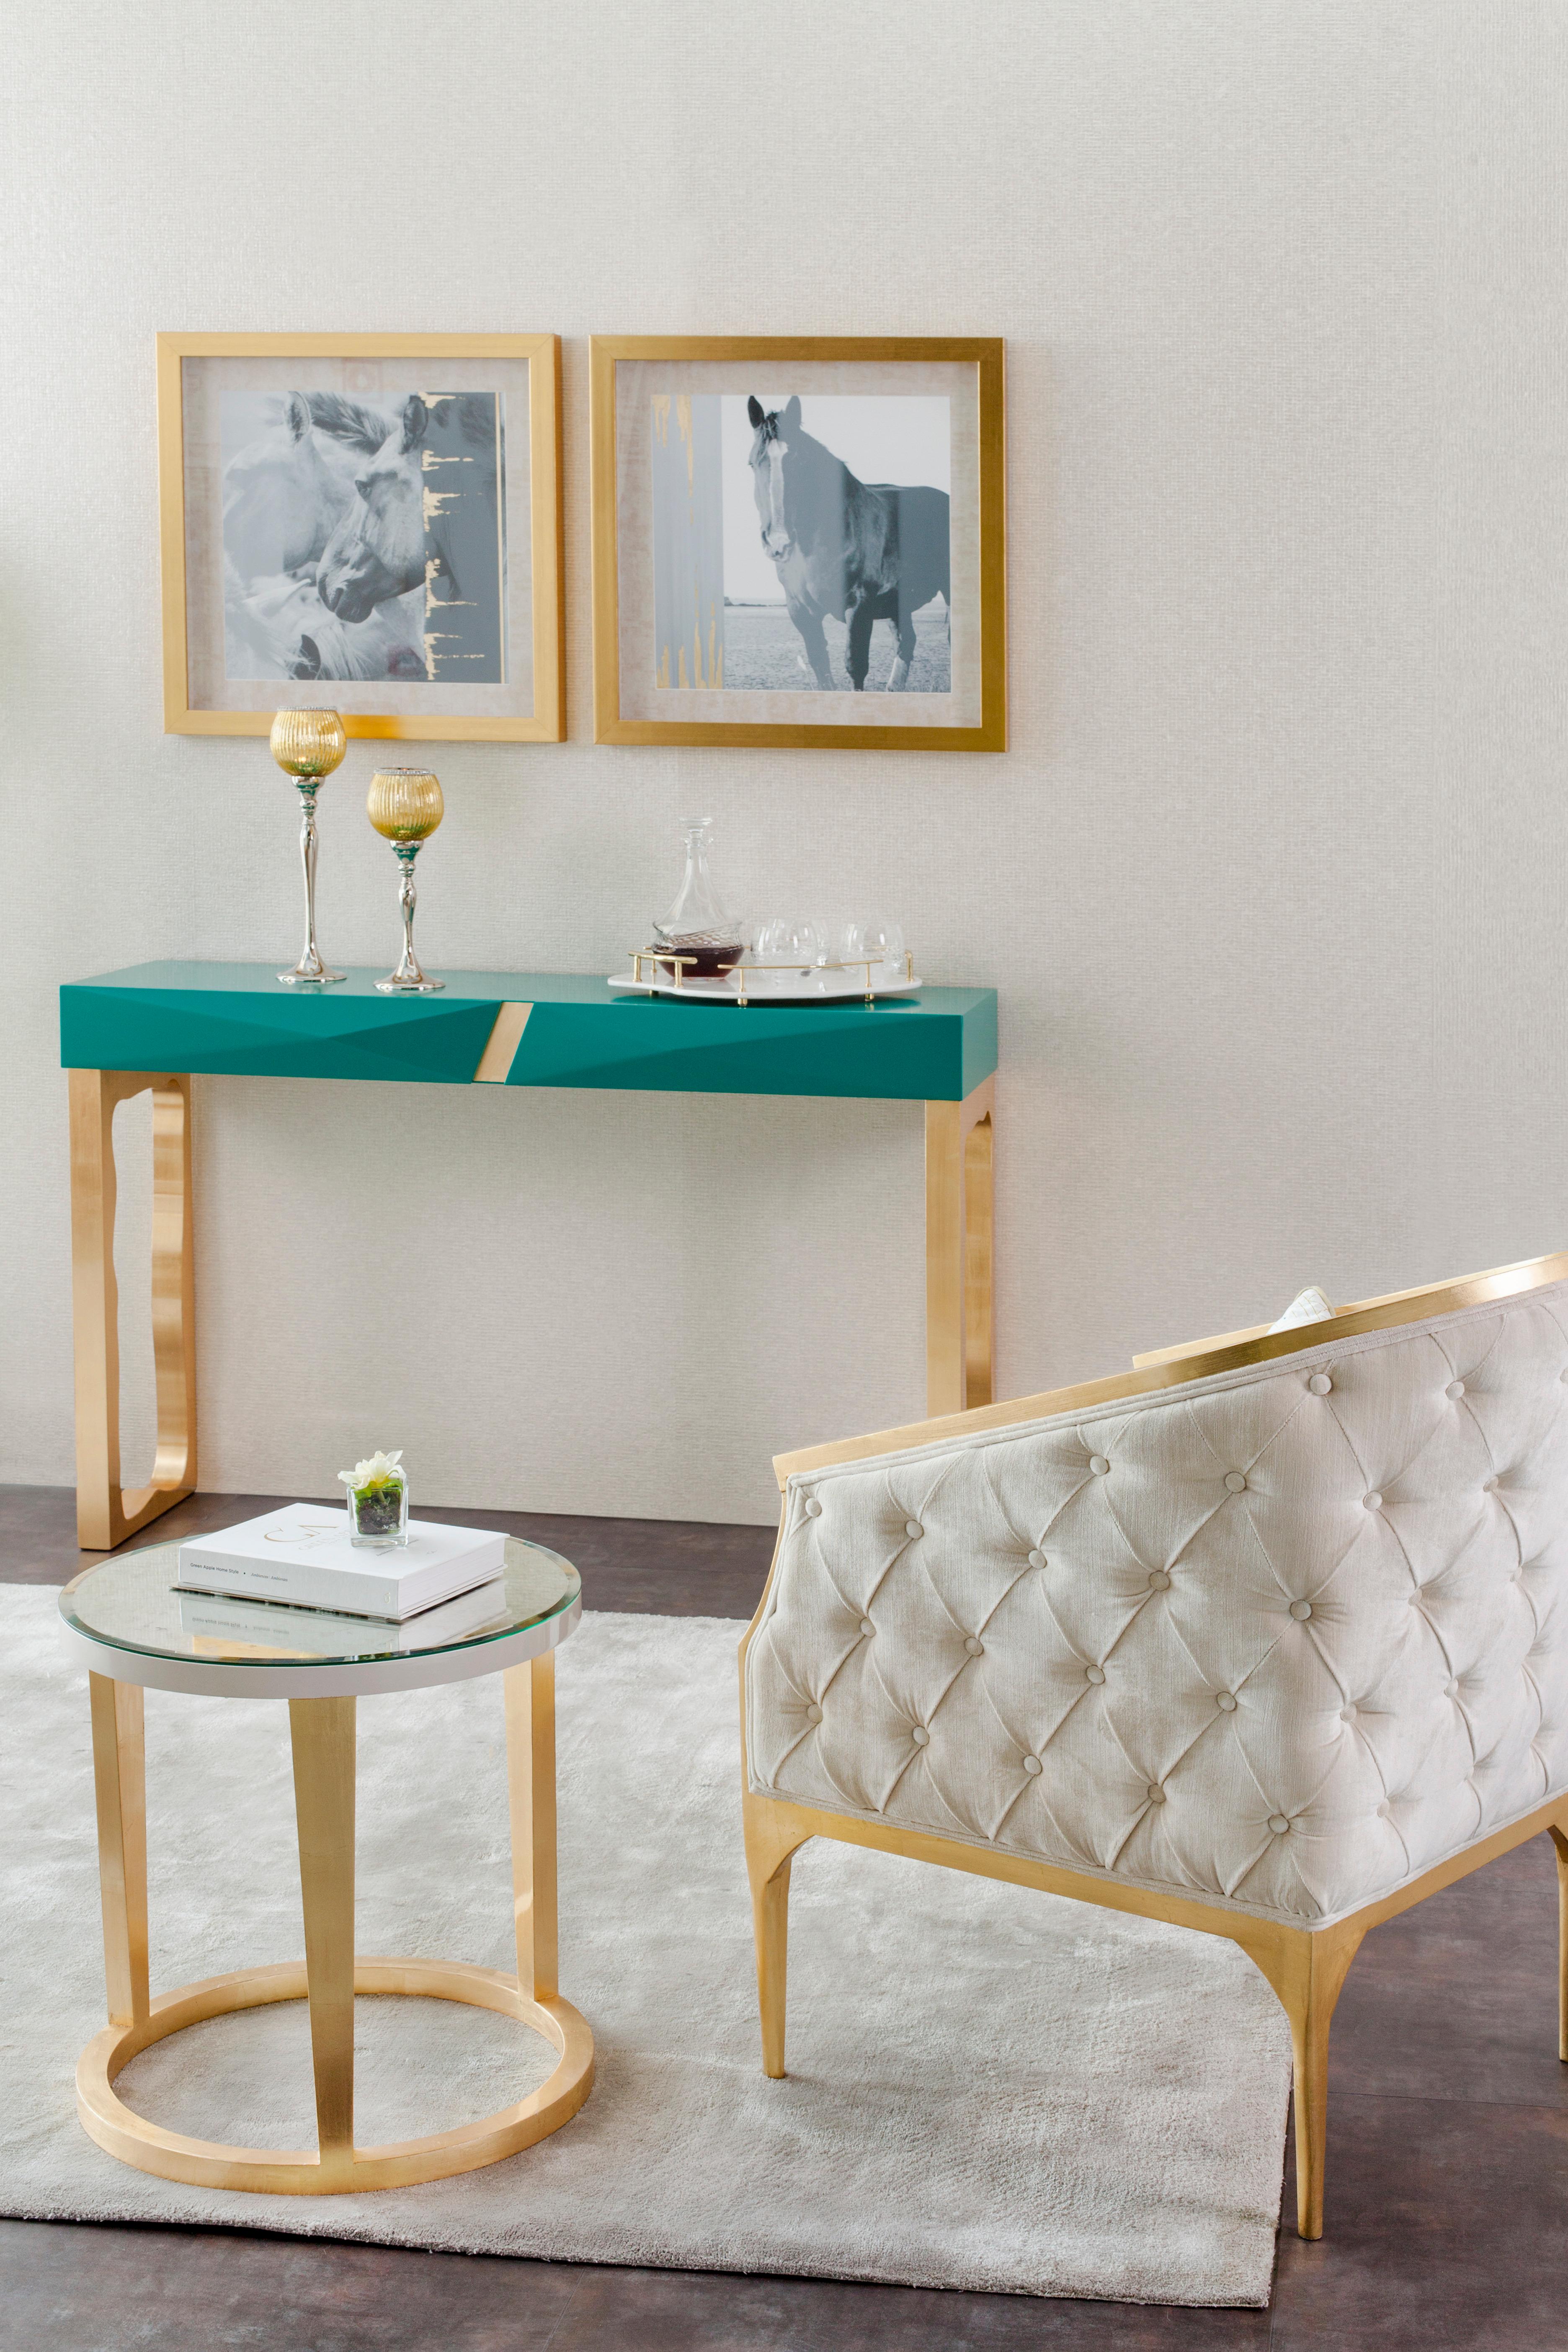 Paris Armchair, Modern Collection'S, handgefertigt in Portugal - Europa von GF Modern.

Der Sessel Paris verleiht jedem Wohnbereich eine raffinierte und elegante Note. Mit beigem Samt gepolstert, strahlt er Luxus und Perfektion aus. Die Beine und